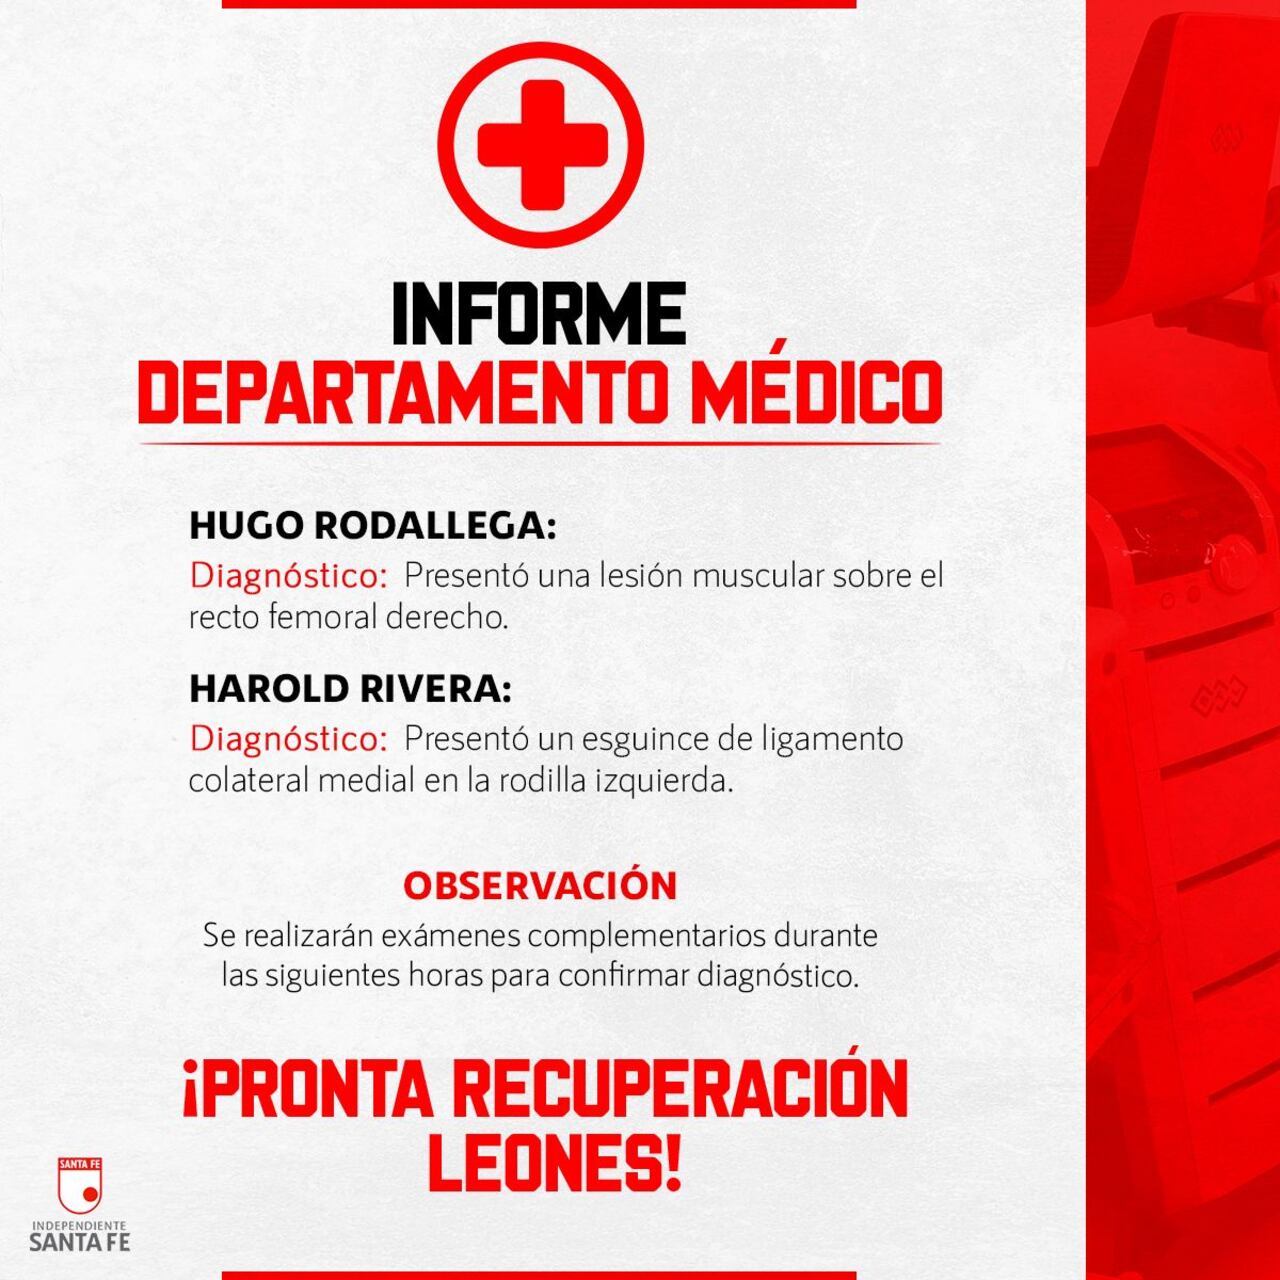 El parte médico de Independiente Santa Fe sobre Hugo Rodallega y Harold Rivera.